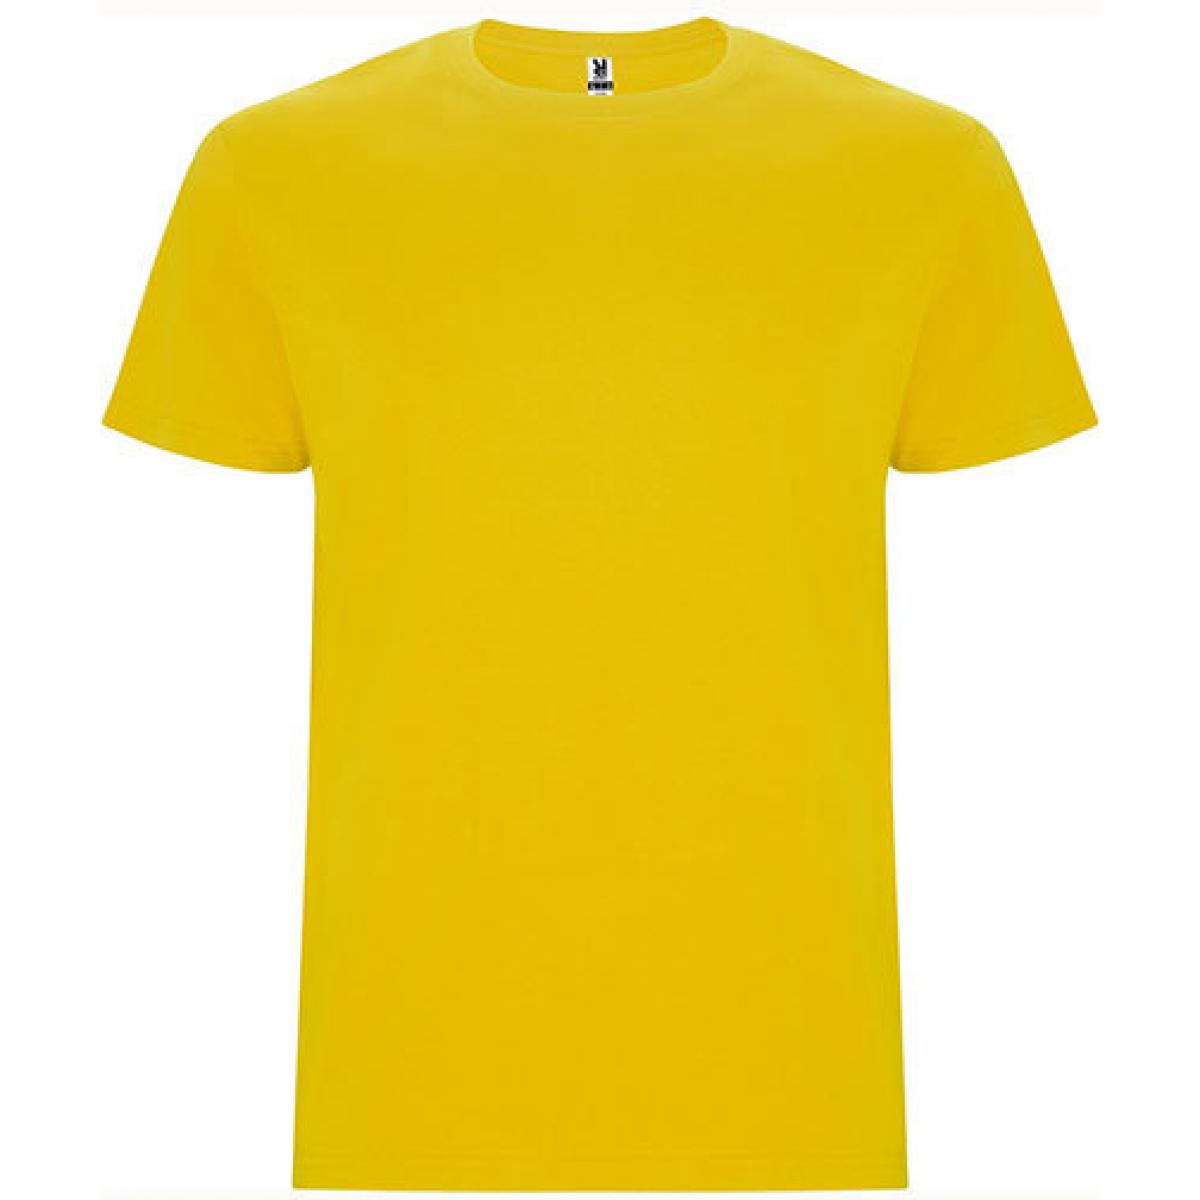 Hersteller: Roly Herstellernummer: CA6681 Artikelbezeichnung: Stafford T-Shirt - Doppellagiger Rundhalskragen Farbe: Yellow 03